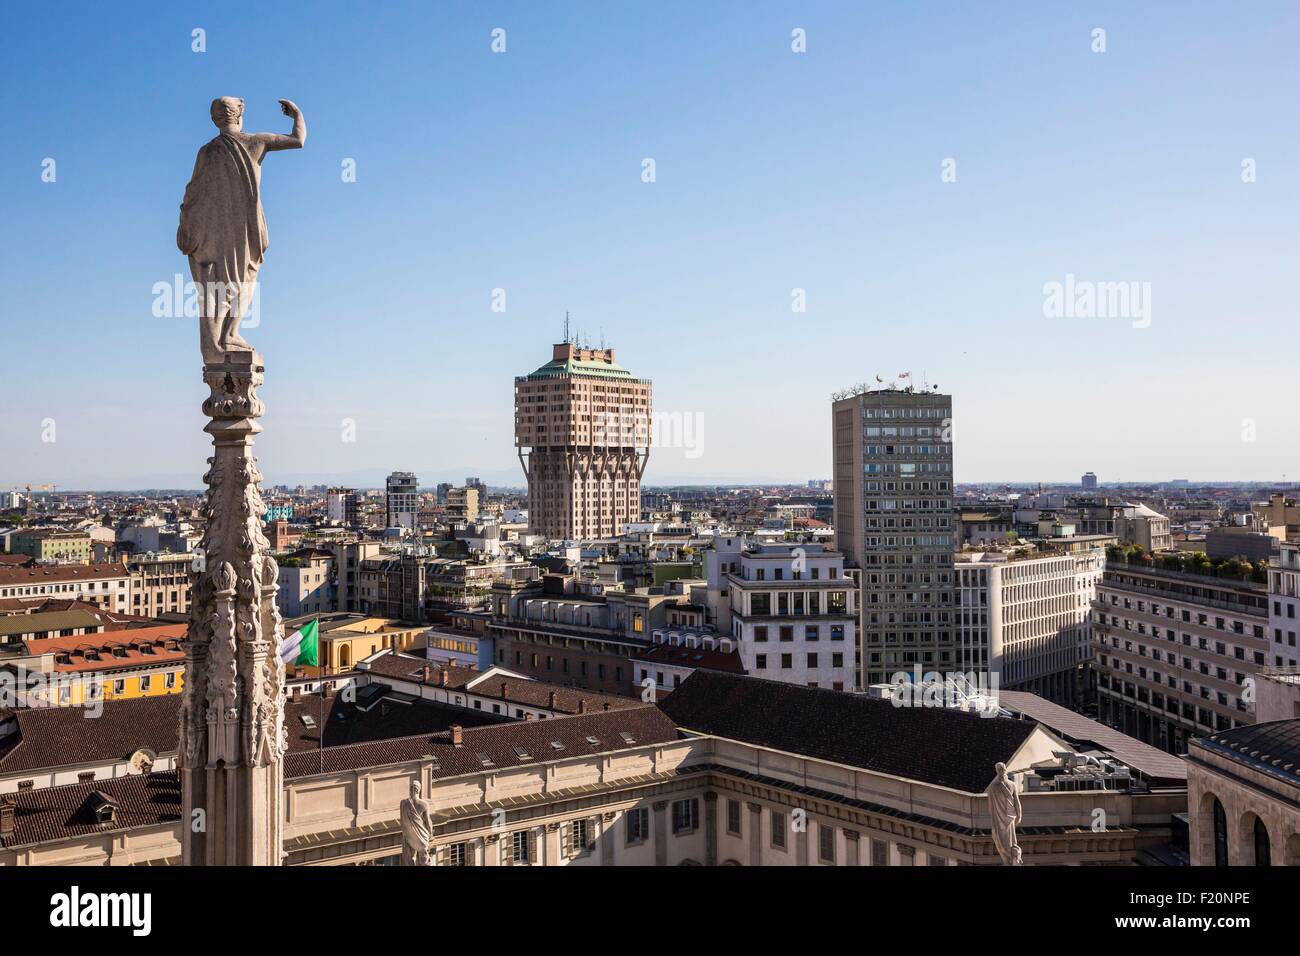 L'Italie, Lombardie, Milan, une flèche et statue de Duomo vu depuis la terrasse située sur le toit de la cathédrale en vue de la tour Velasca Banque D'Images